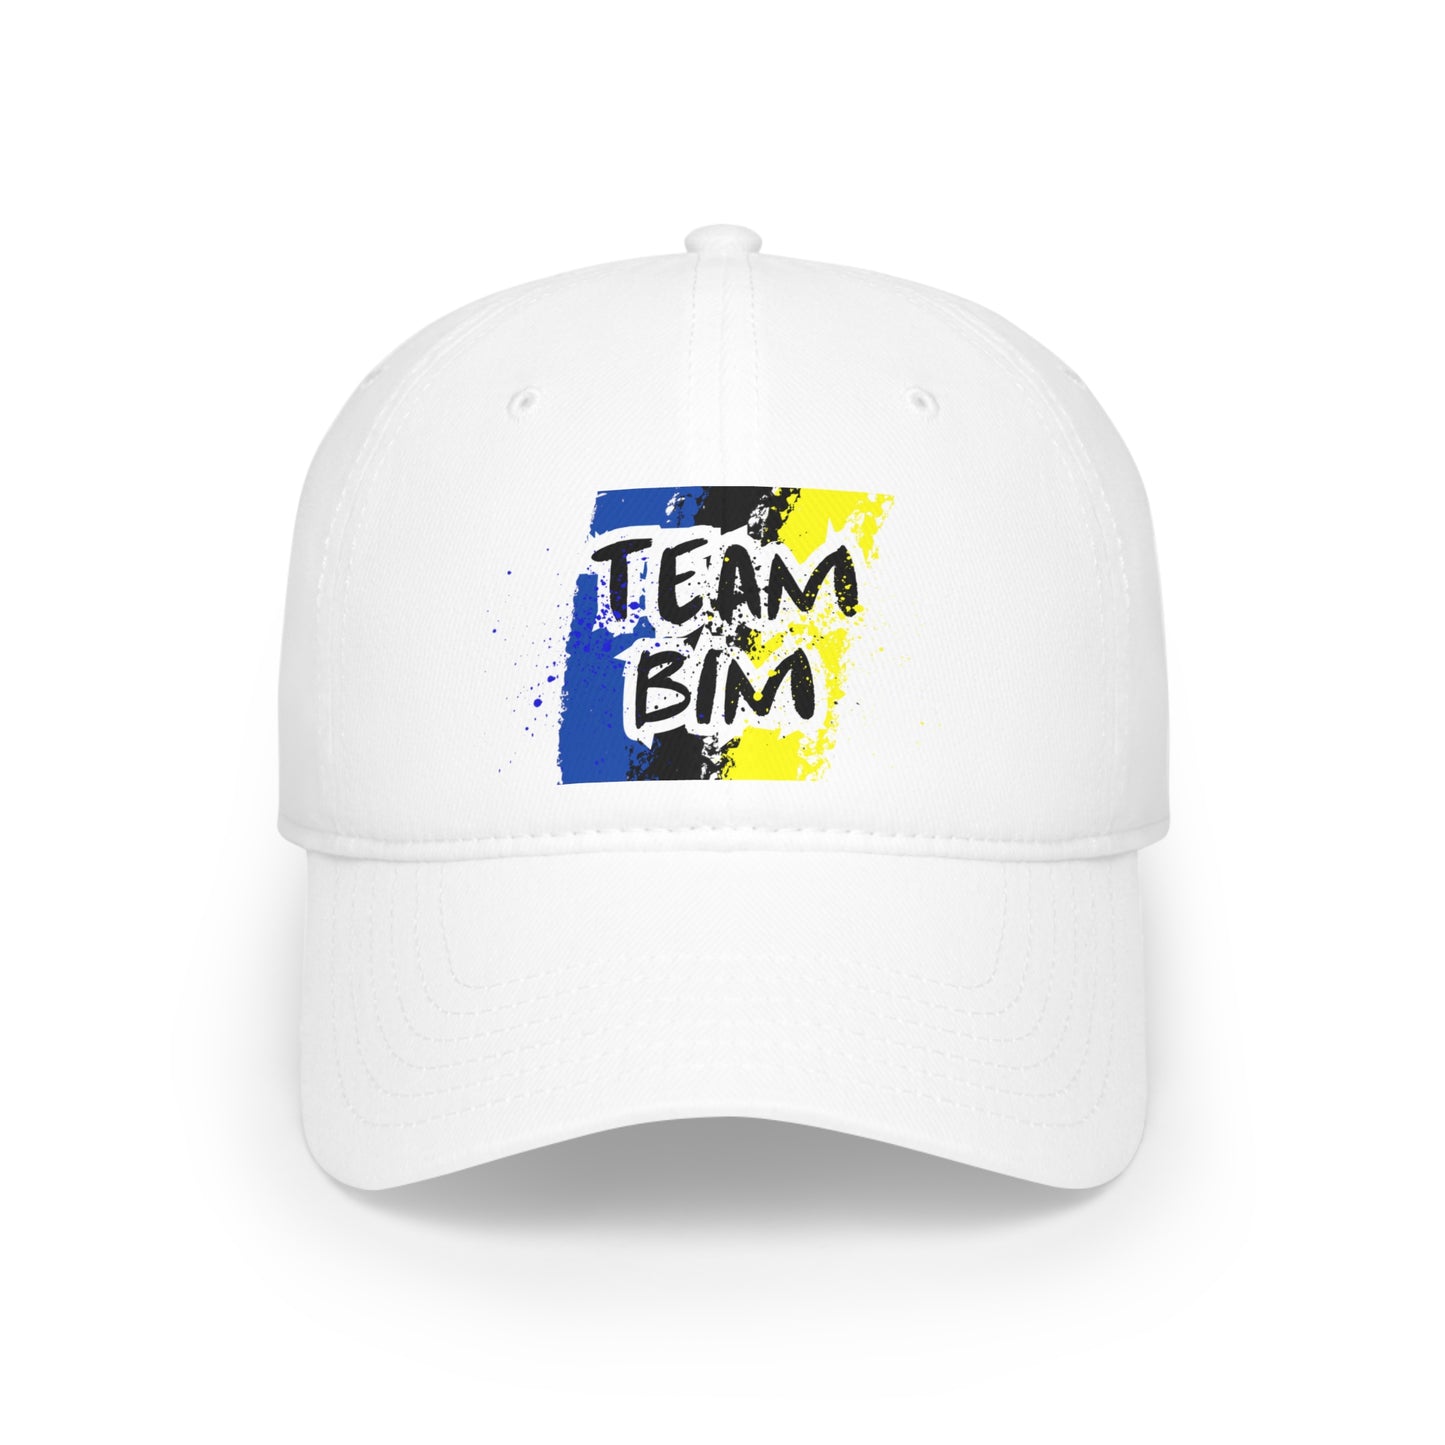 Team Bim Low Profile Baseball Cap